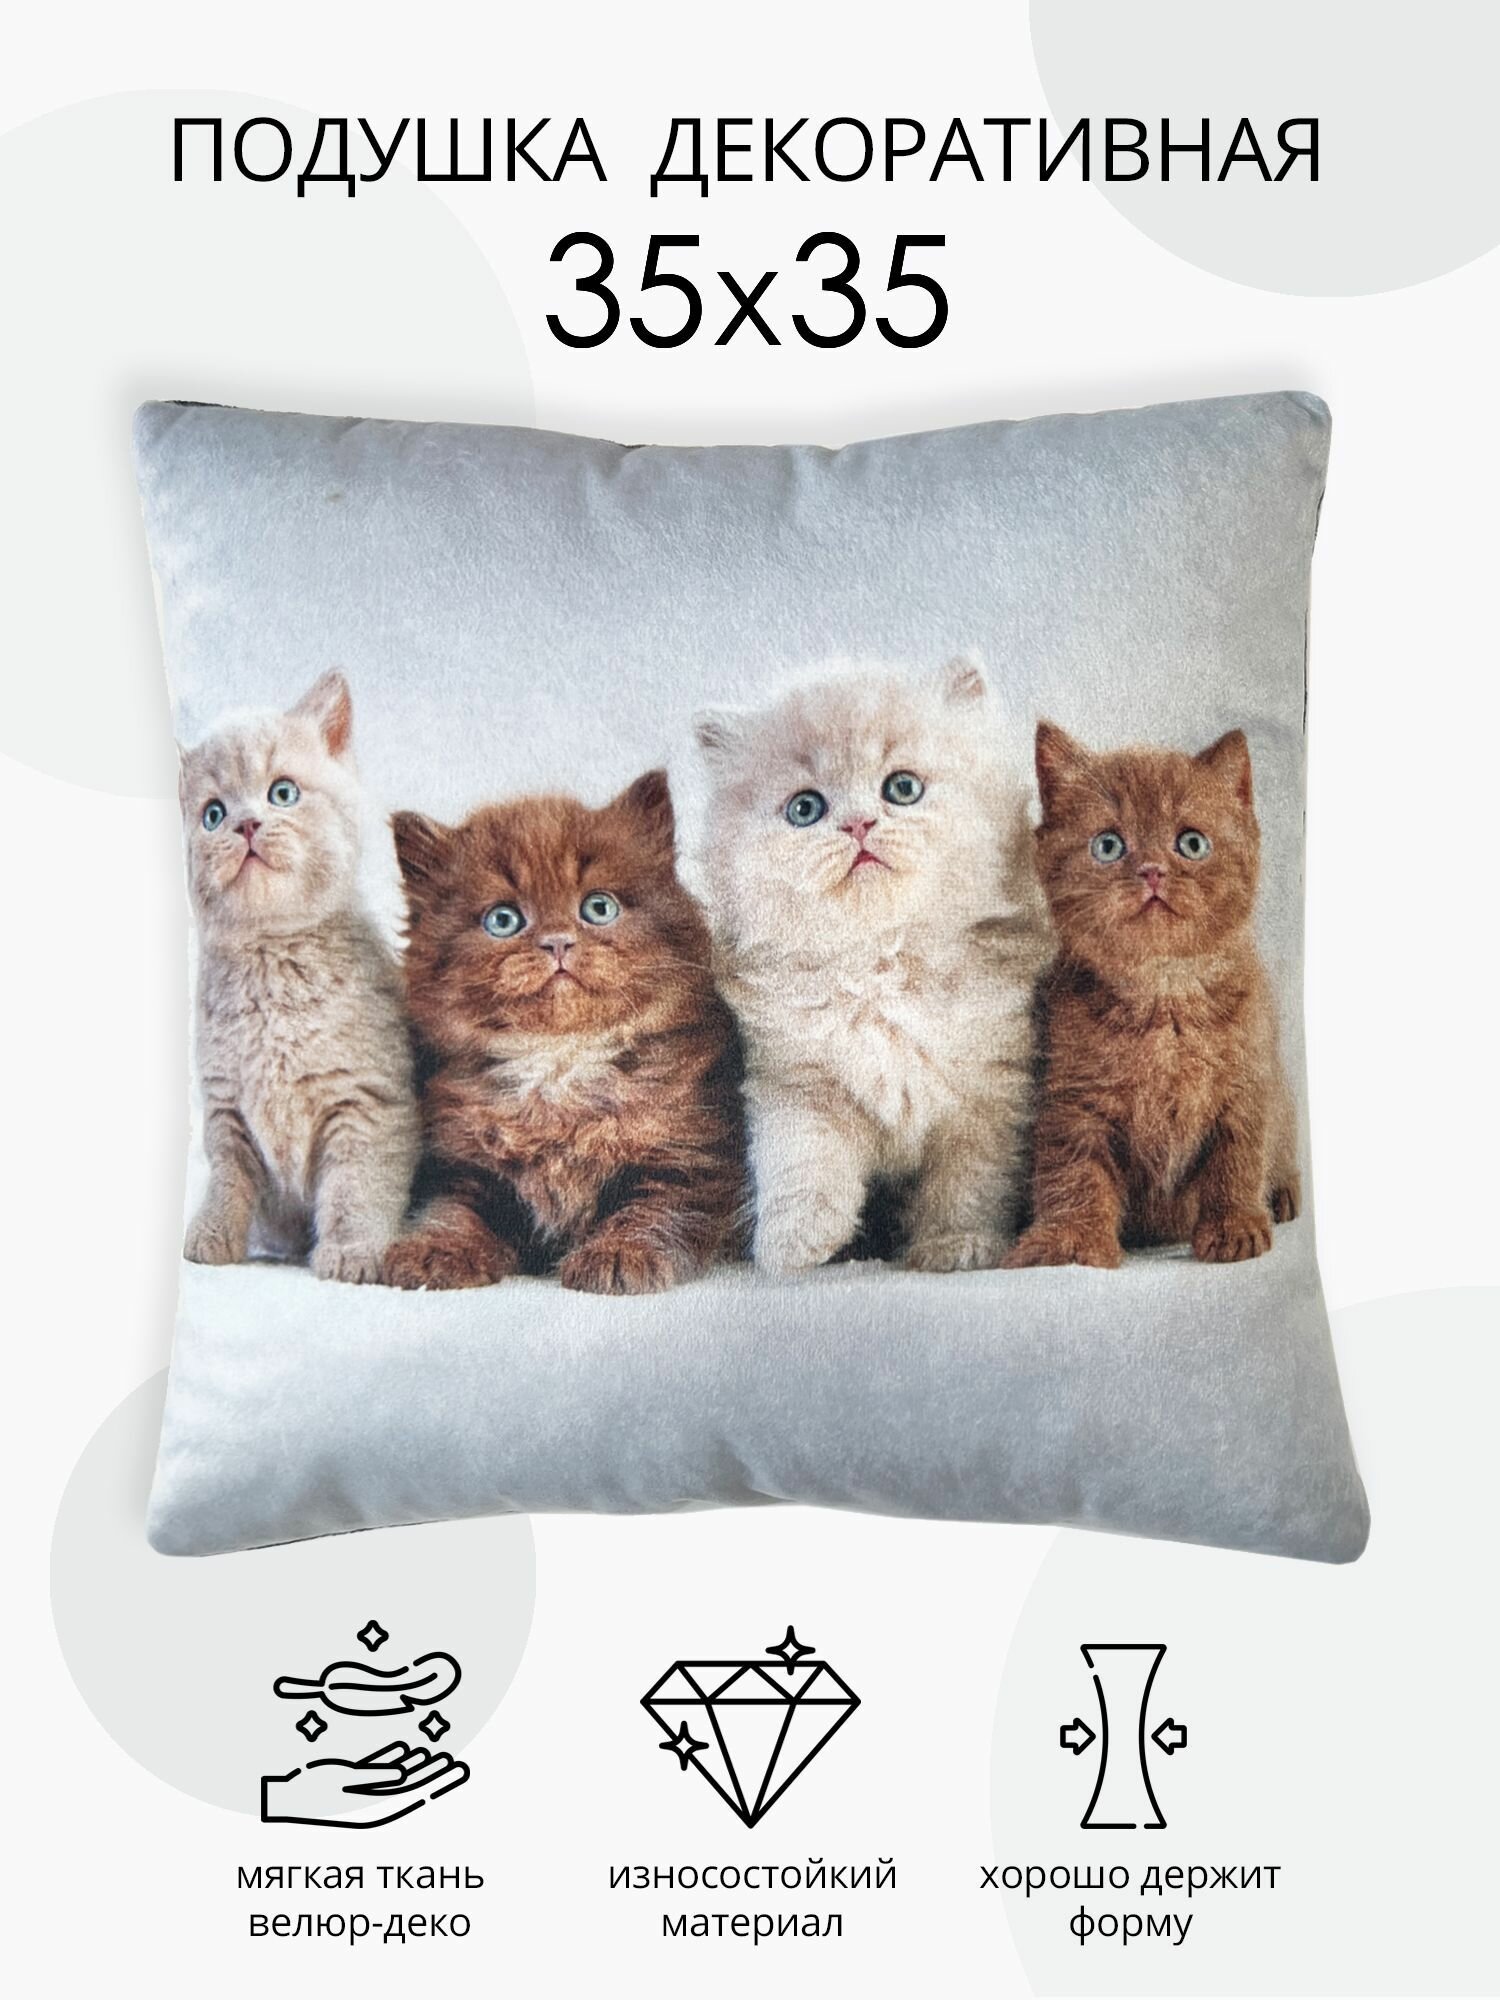 Подушка декоративная Пушиста компания, подушка из велюра, для дивана и кресла, подушка в подарок, рисунок котята, размер 35х35 см.